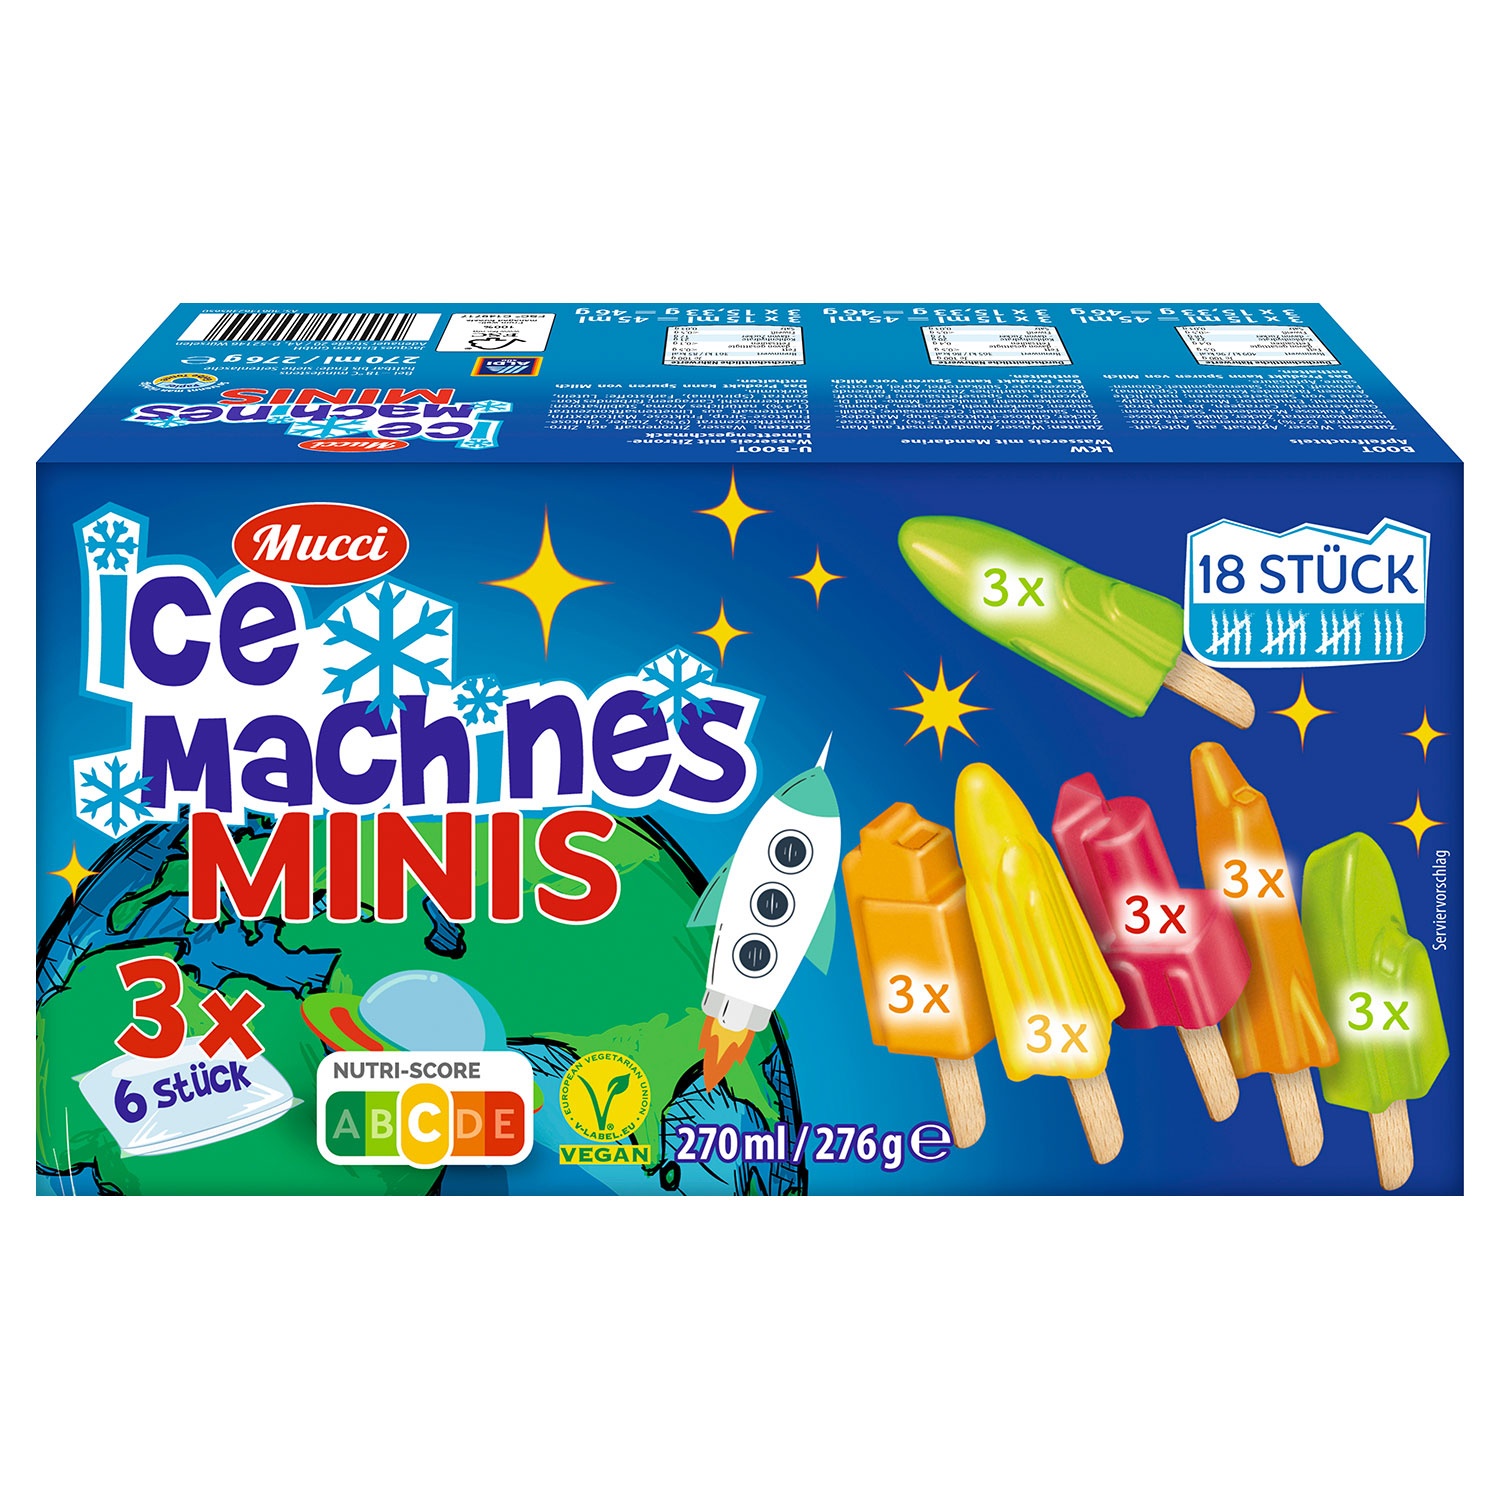 MUCCI Ice Machines Minis 270 ml